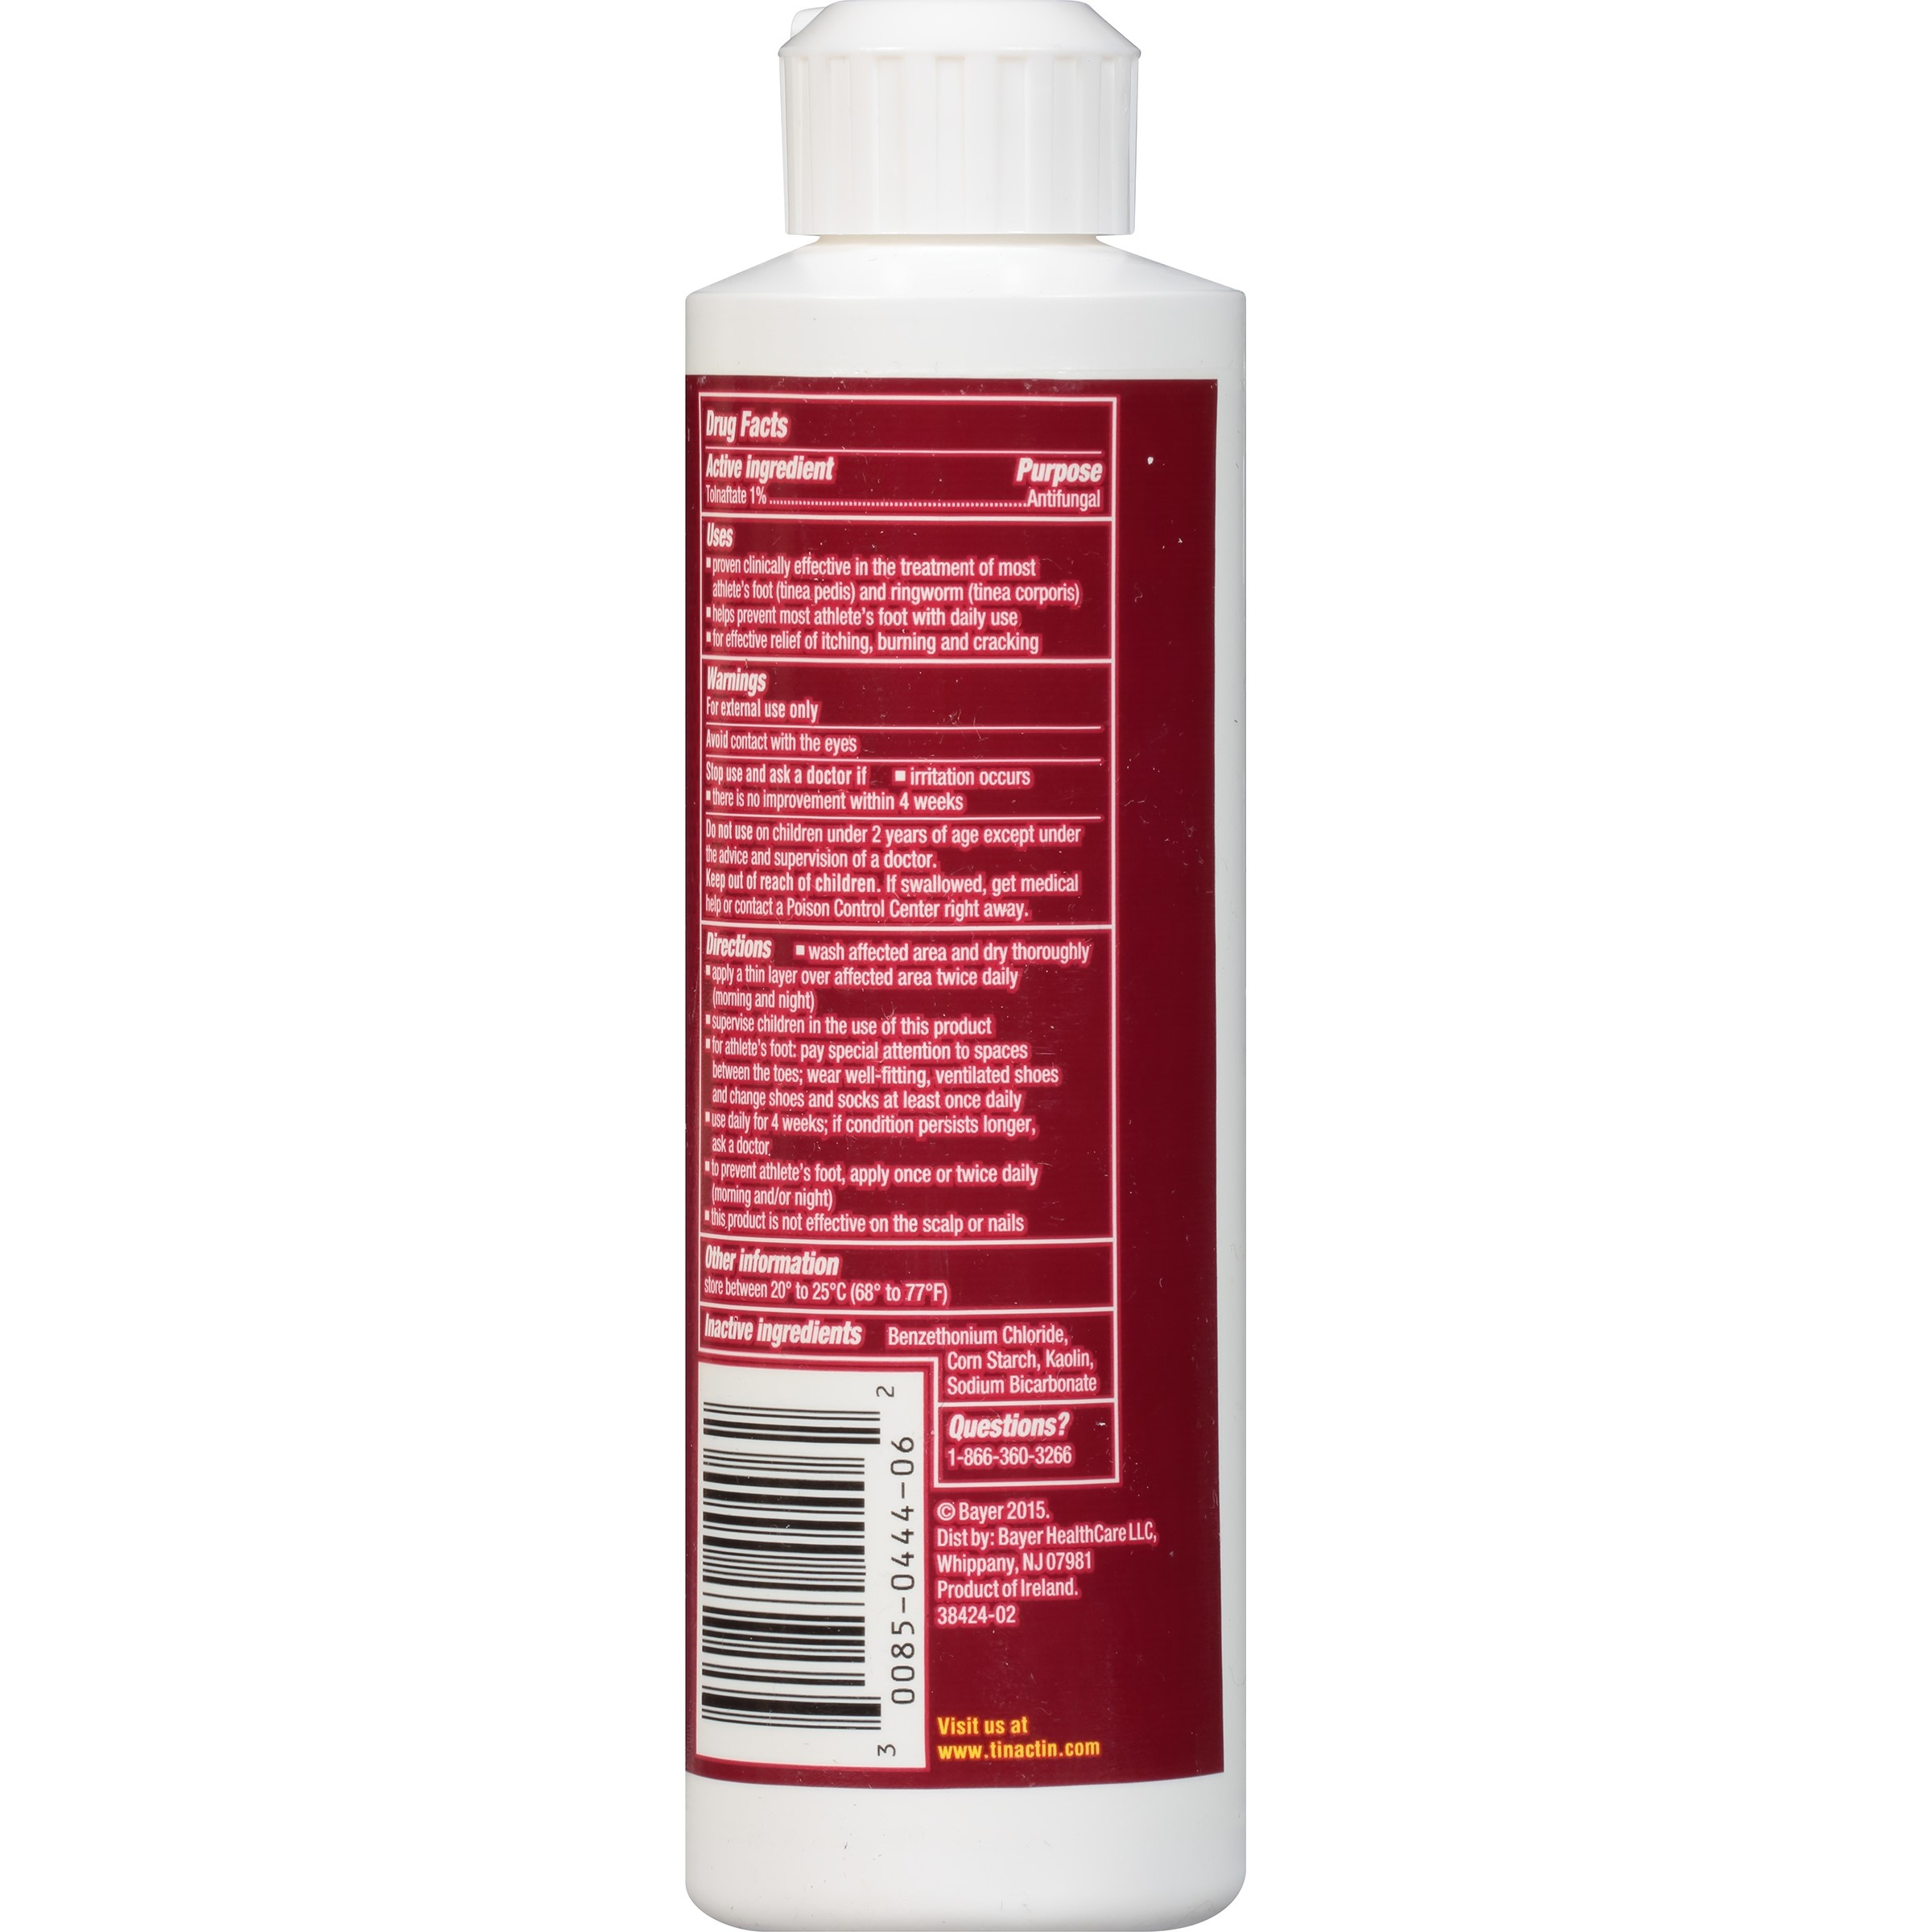 Tinactin Antifungal Super Absorbent Powder, 3.8 oz - image 3 of 4